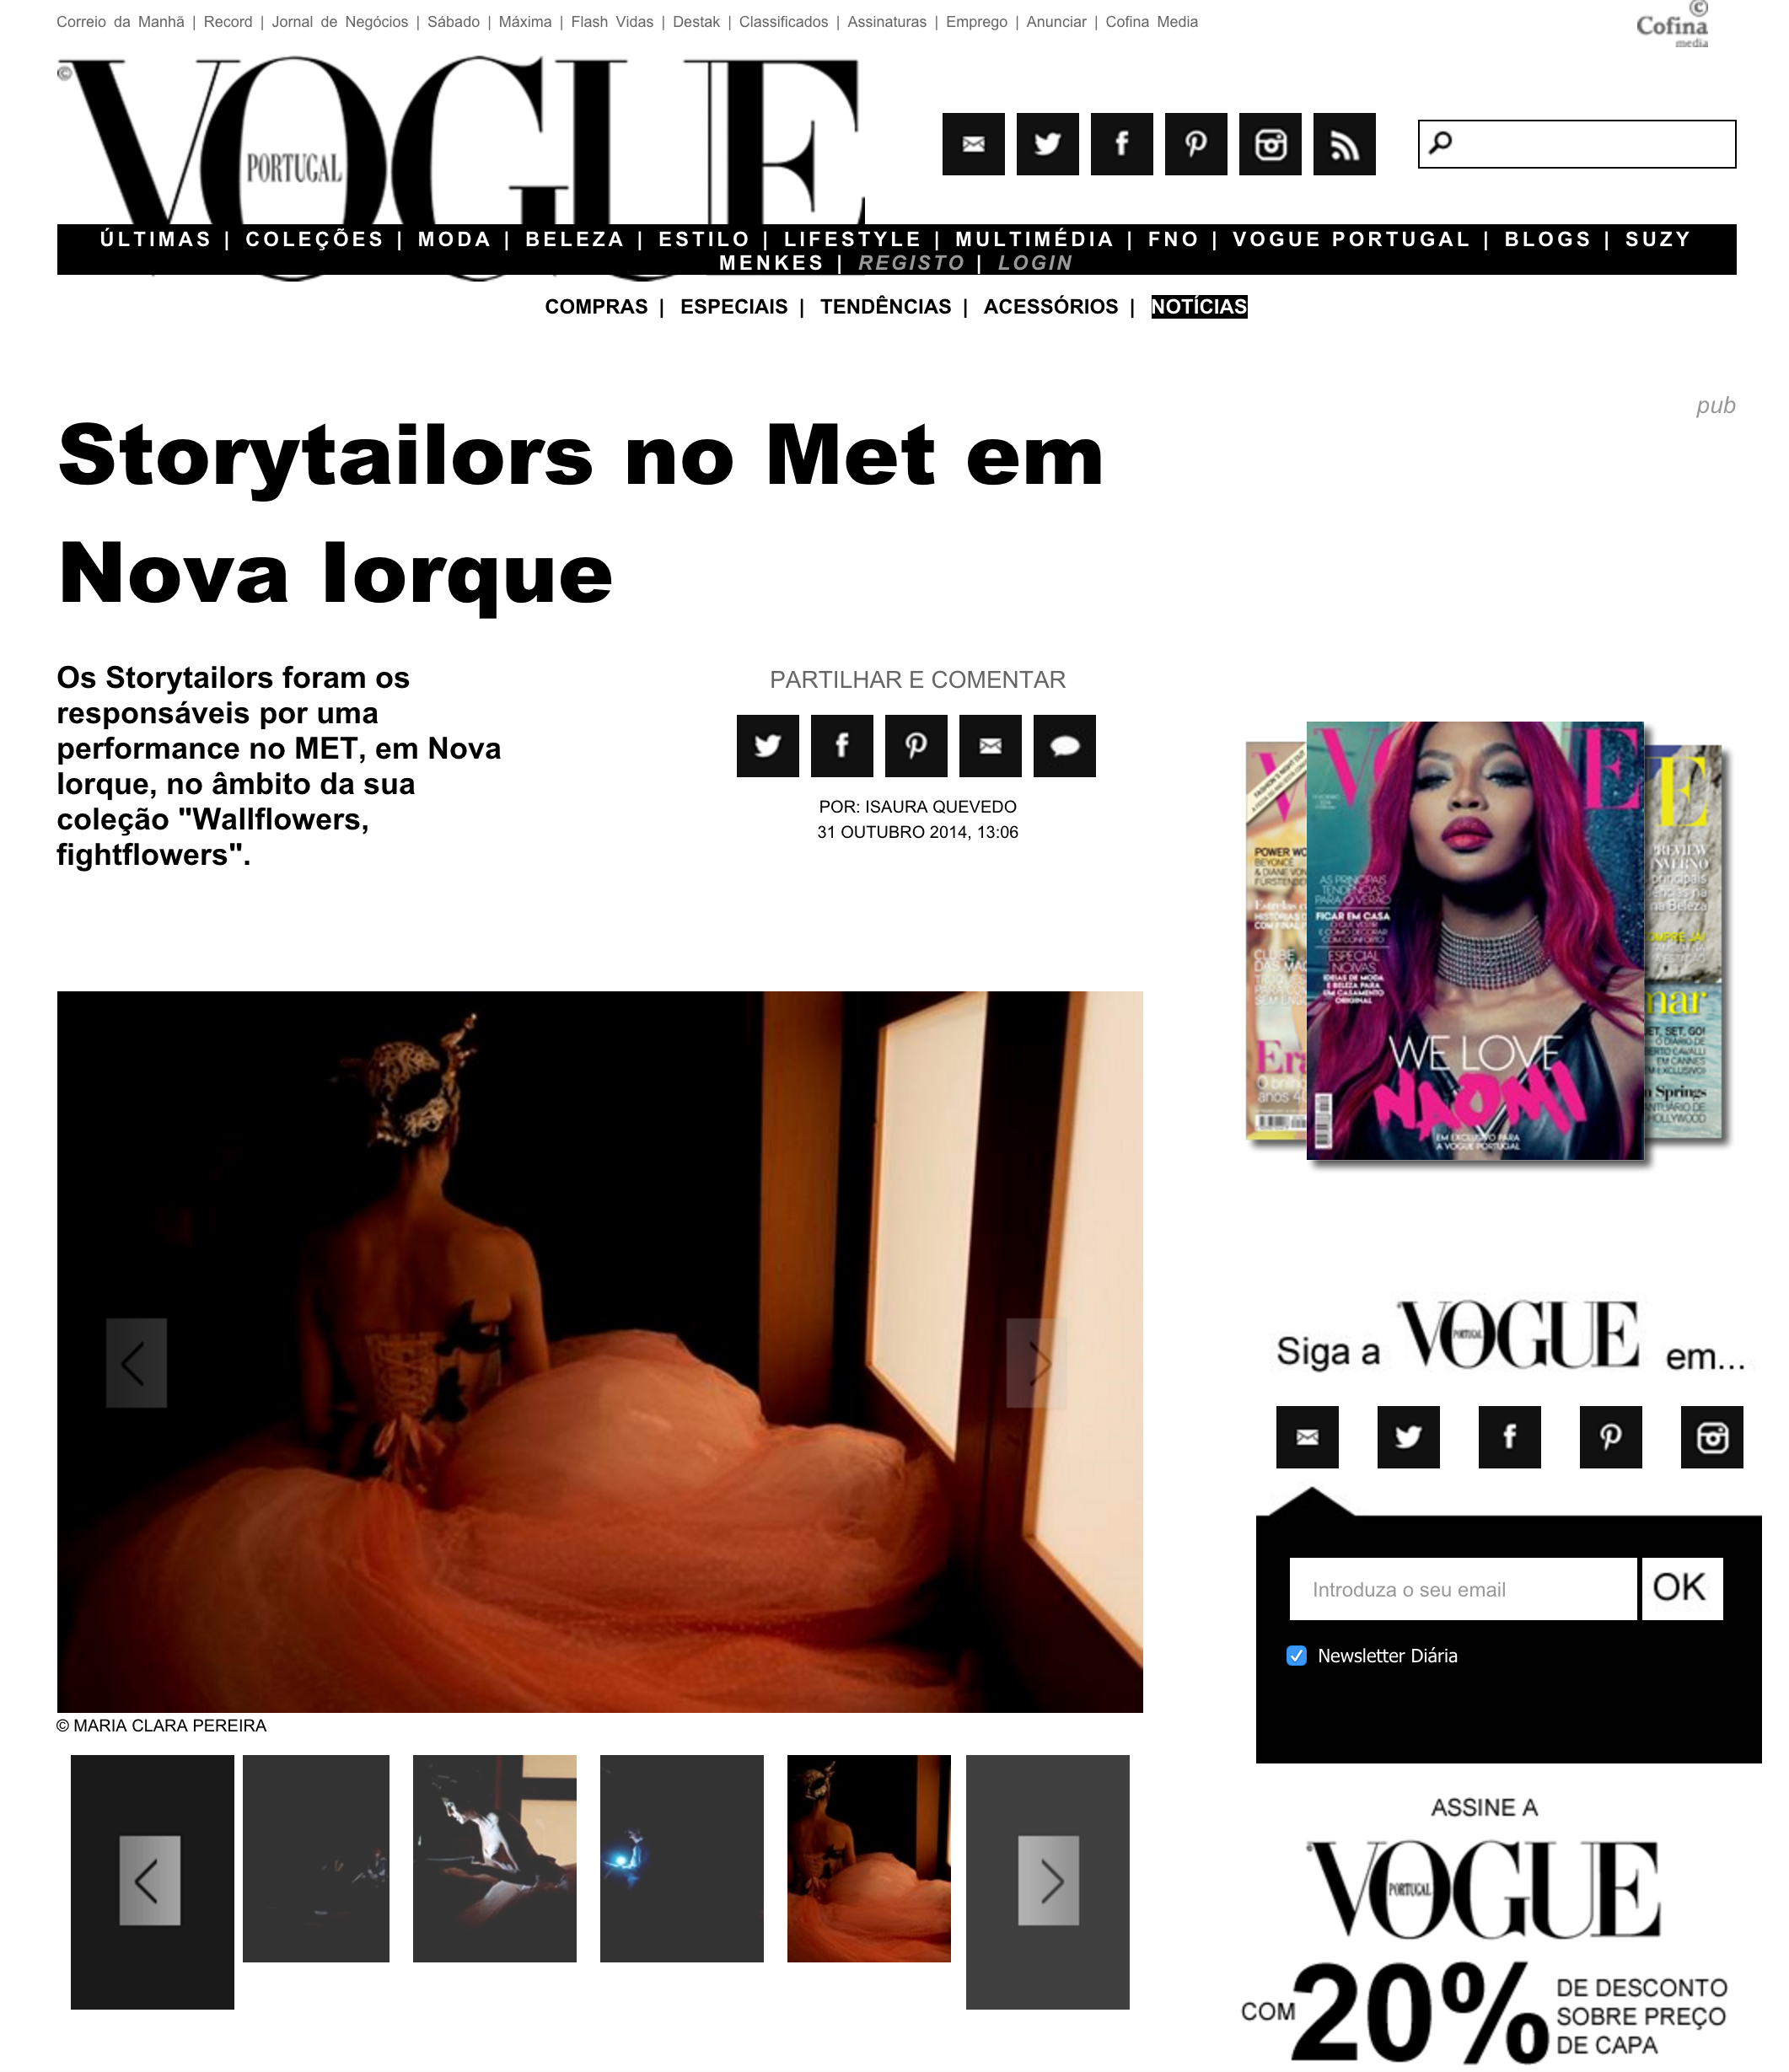 VoguePt_Storytailors.png